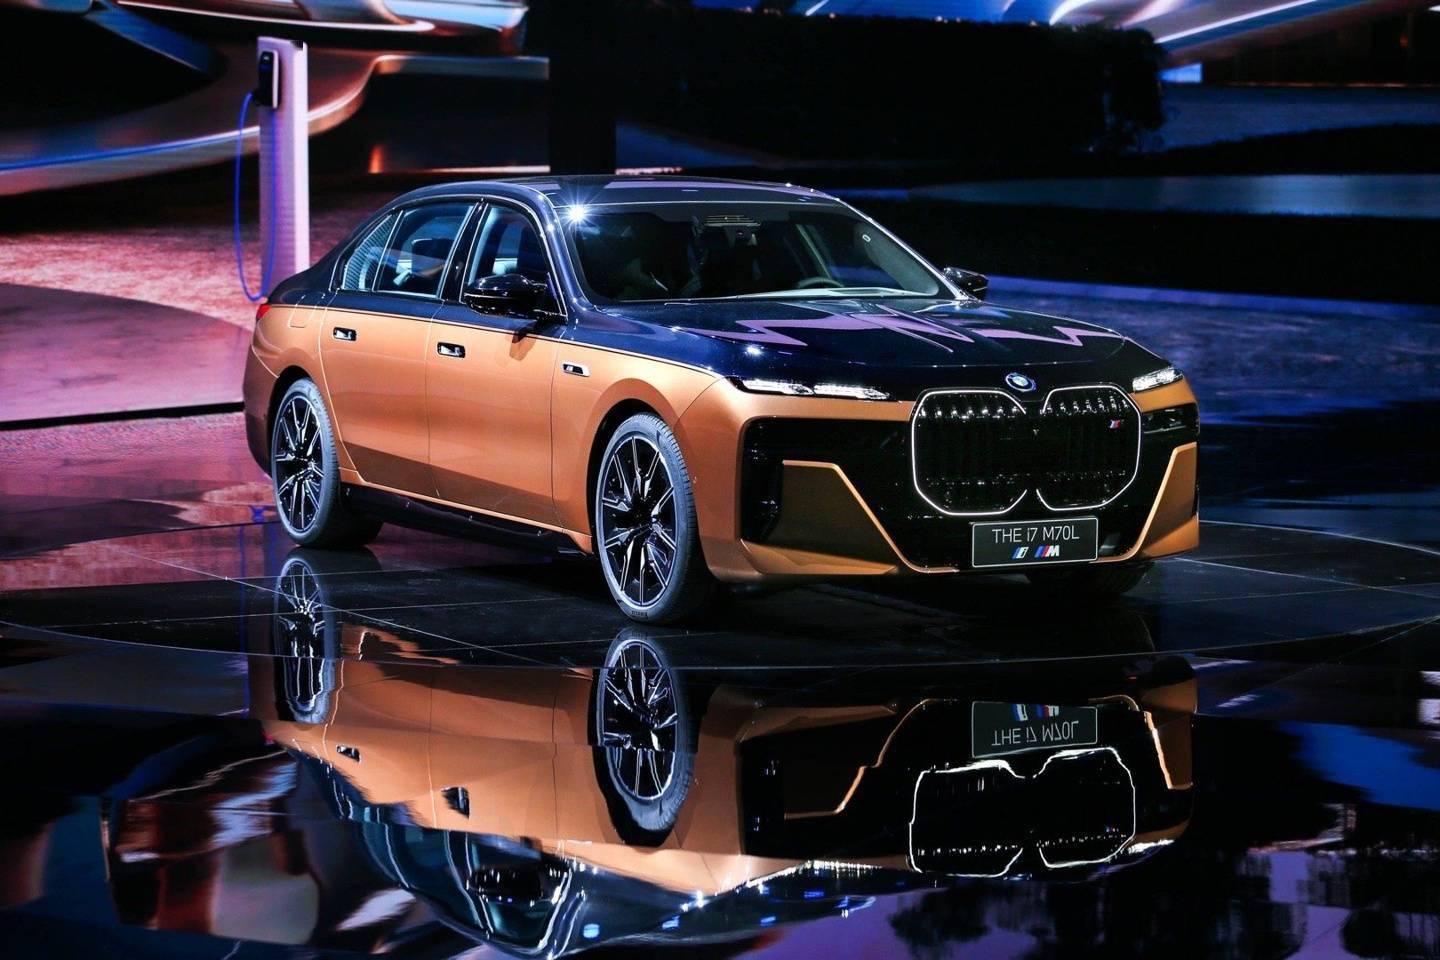 宝马最强电动汽车BMW i7 M70L迎来全球首发 预计将在7月份正式投产